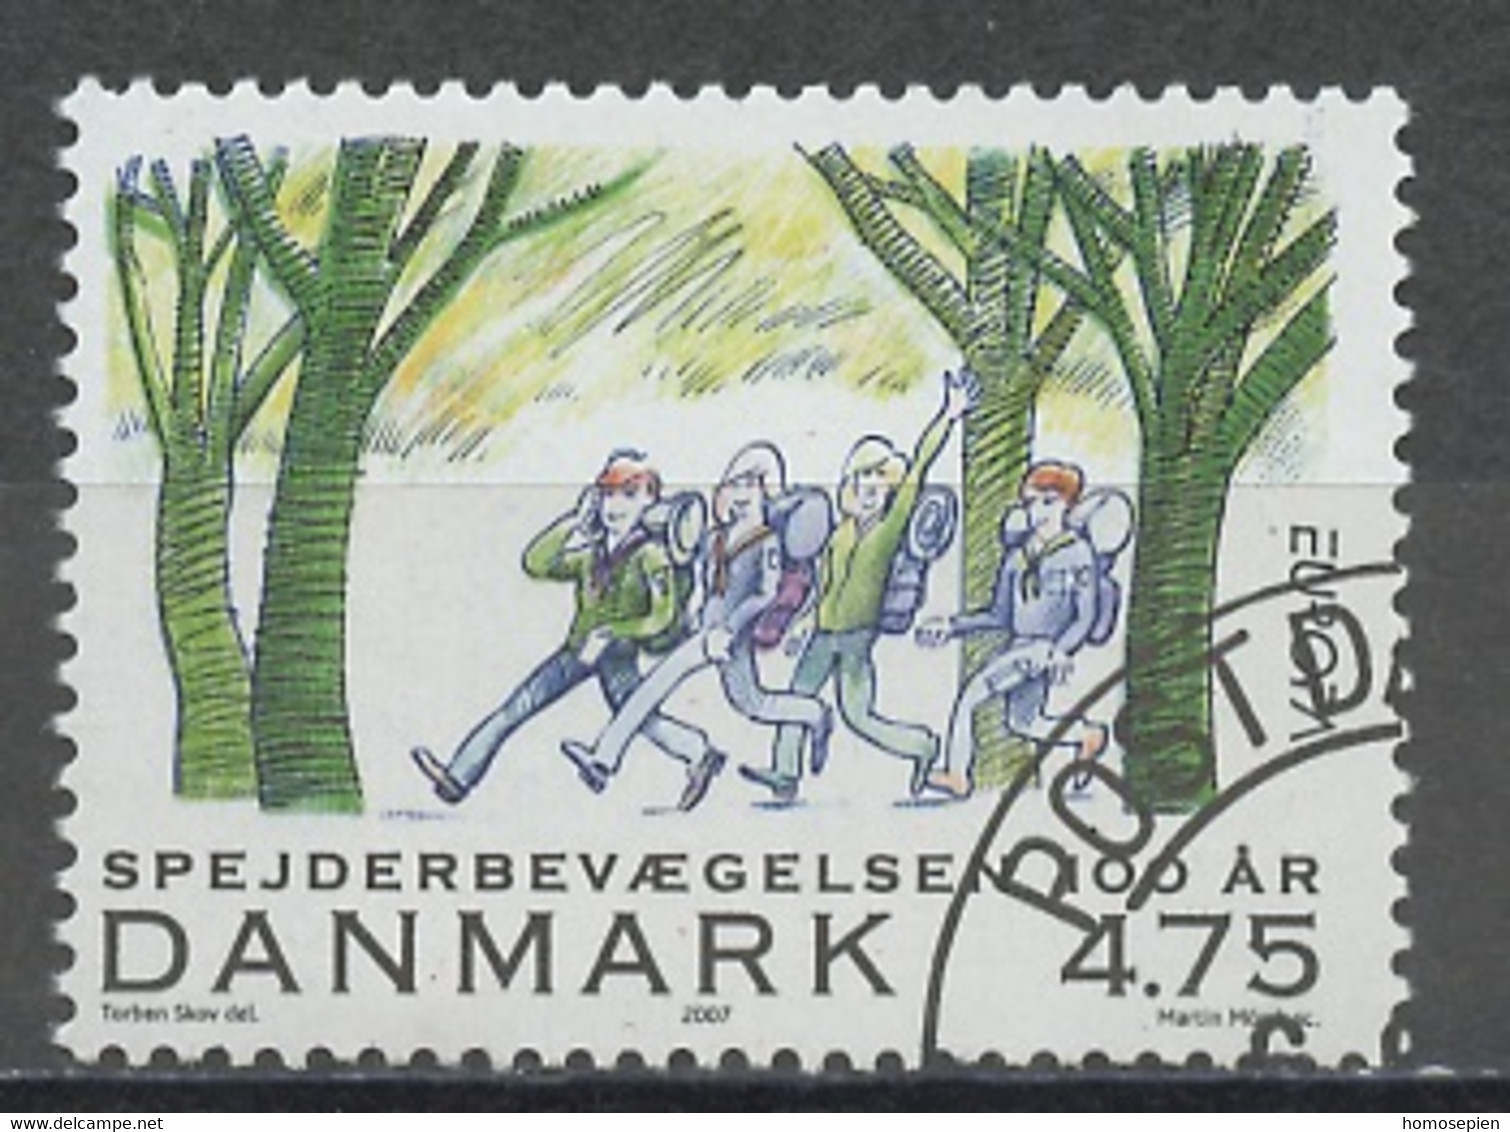 Danemark - Dänemark - Denmark 2007 Y&T N°1473 - Michel N°1470 (o) - 4,75k EUROPA - Used Stamps